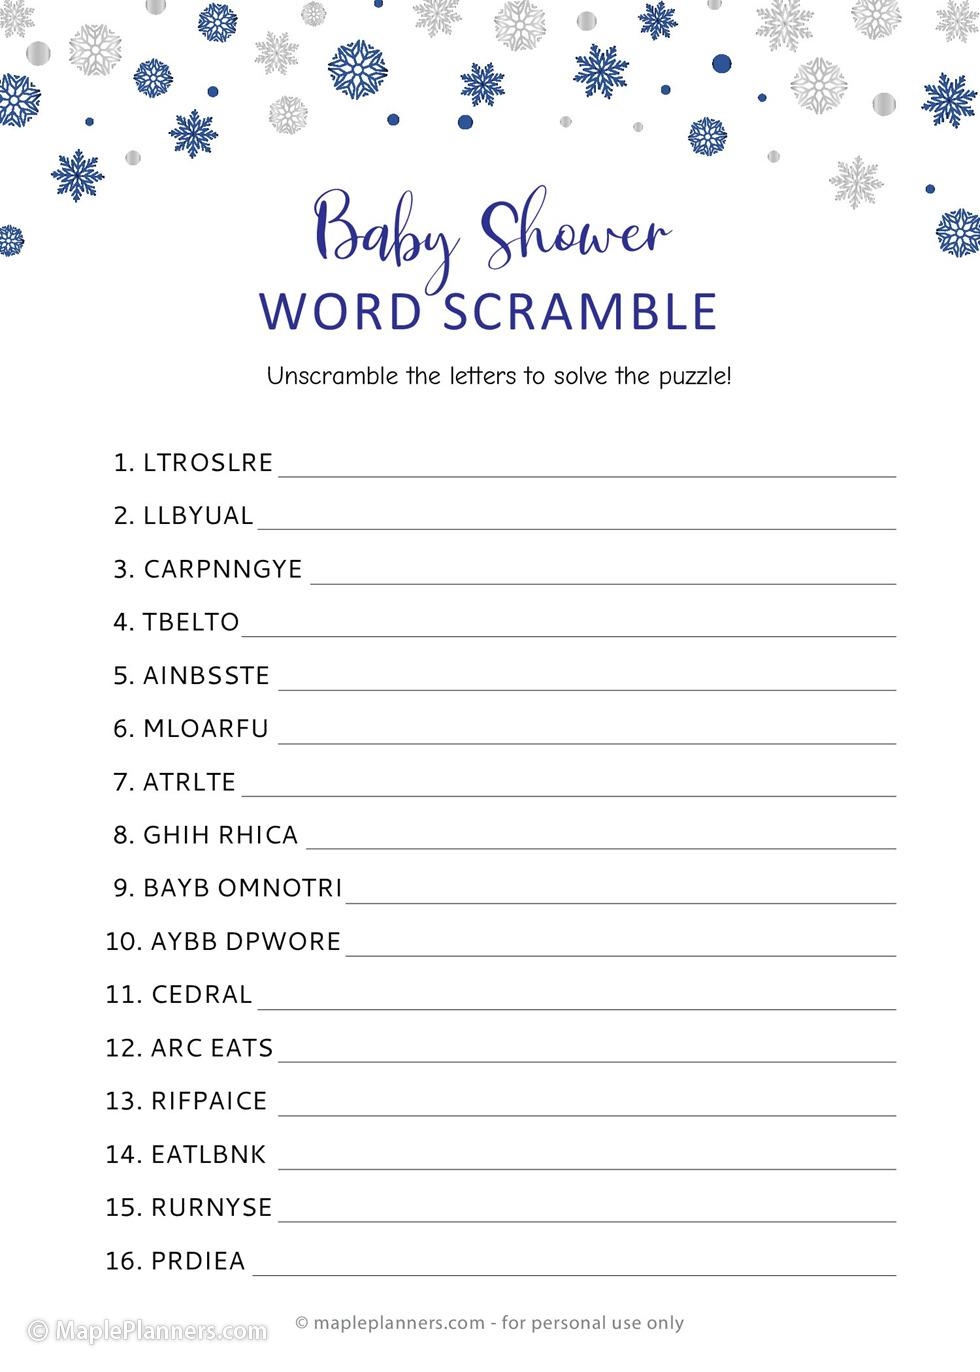 Winter Wonderland Baby Shower Word Scramble - Free Printable Baby Shower Word Scramble